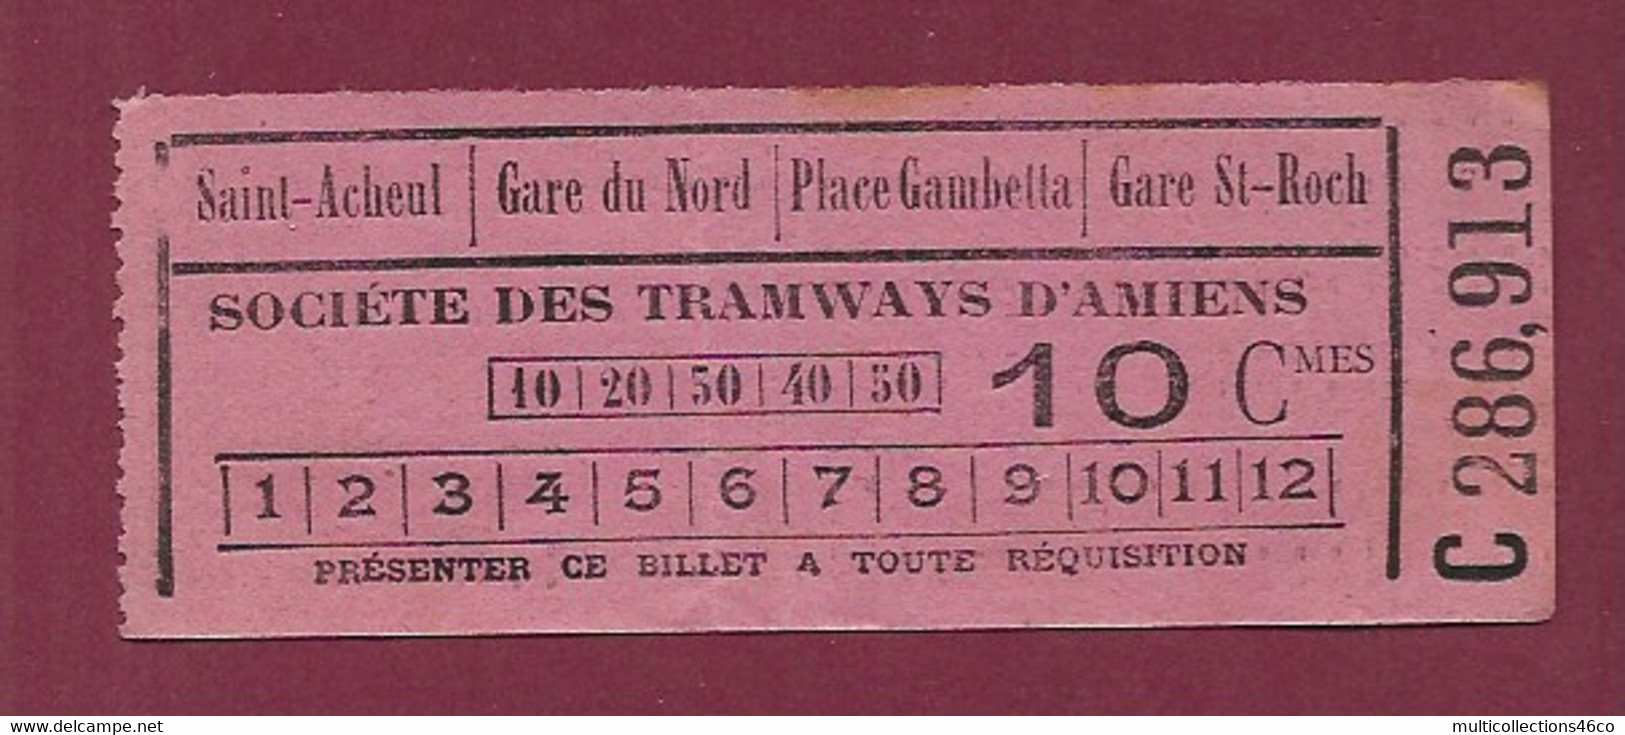 140121 TICKET CHEMIN DE FER TRAM METRO - C286913 Société Tramways AMIENS 10 Cmes Saint Acheul Gare Du Nord Gare St Roch - Europe